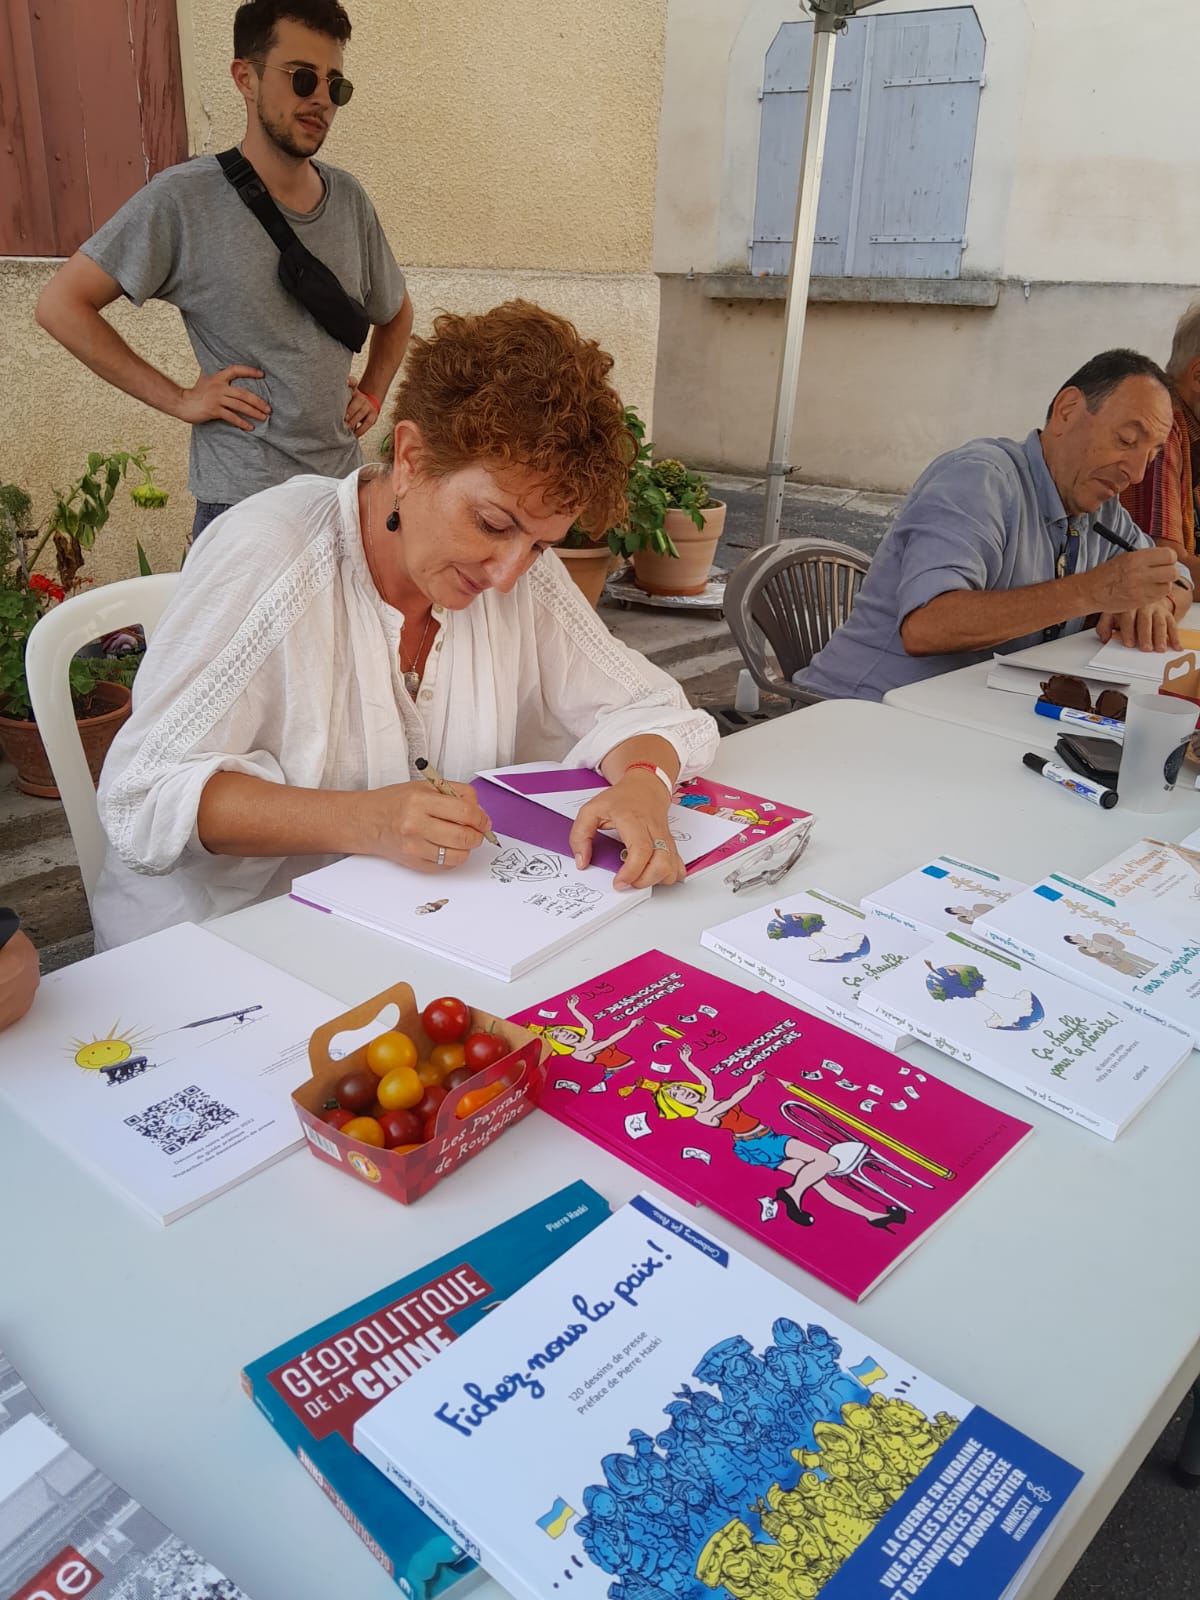 Séance de dédicaces avec les dessinateurs et Pierre Haski autour du livre « Fichez-nous la paix ! » – Dlog (Tunisie) et Kichka (Israël)